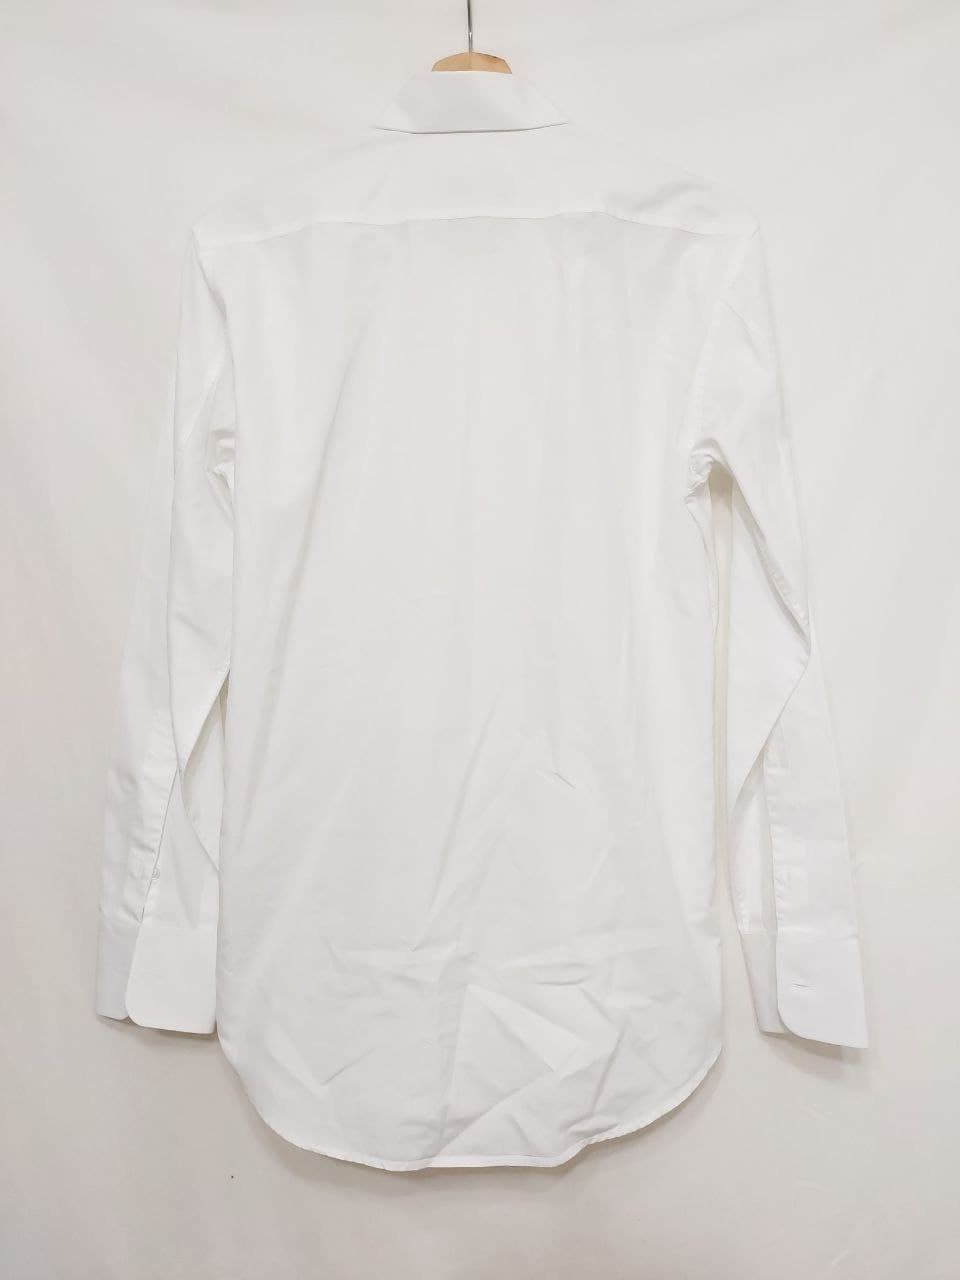 Yves Saint Laurent Shirt Size US S / EU 44-46 / 1 - 2 Preview